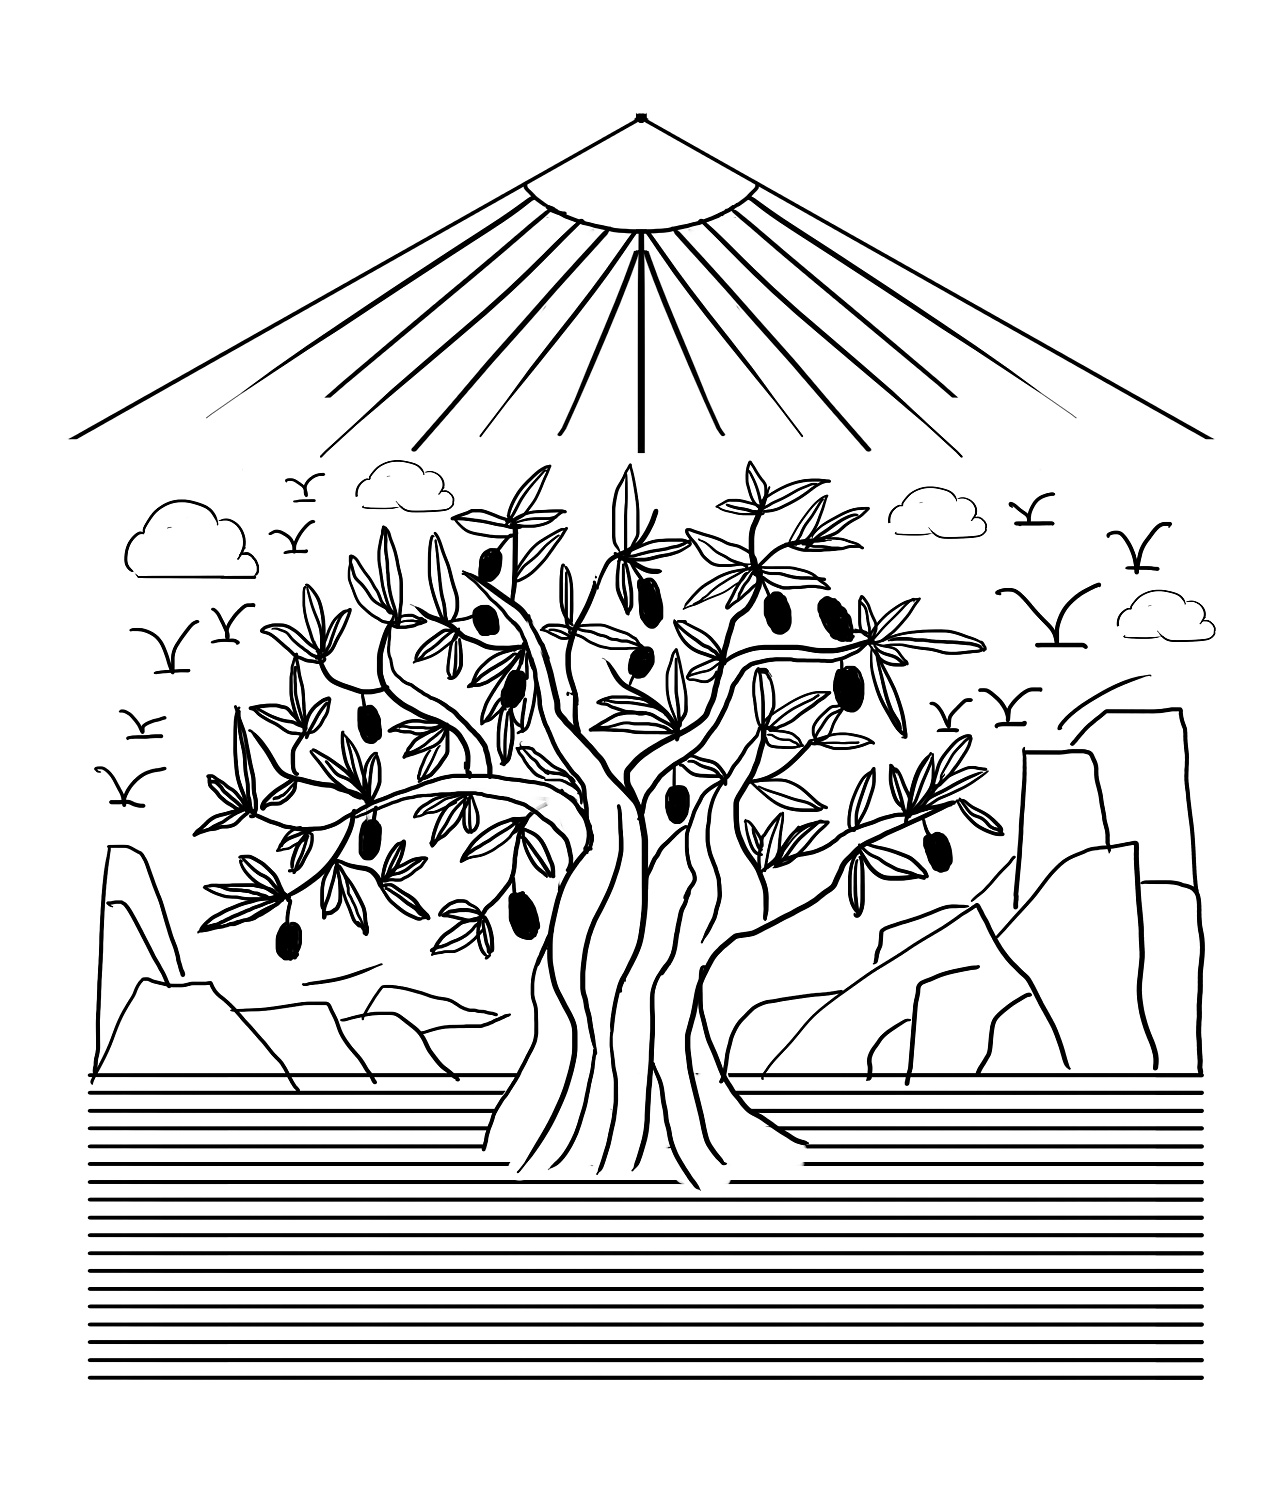 橄榄树画法图片